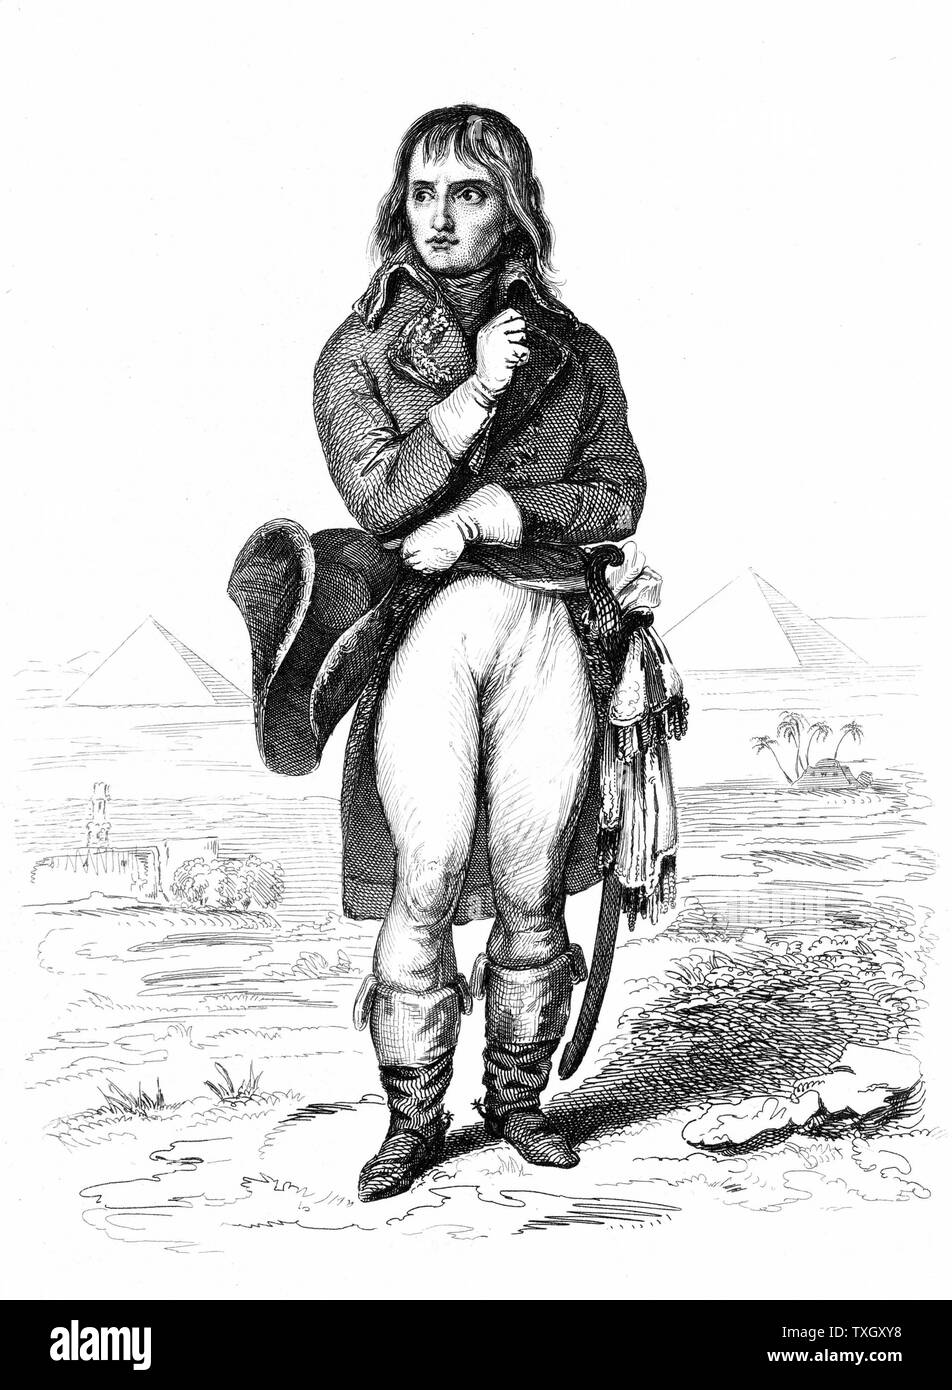 Napoléon (1769-1821) soldat français et l'empereur comme le général Bonaparte lors de sa campagne d'Égypte Gravure 1798-99 Banque D'Images